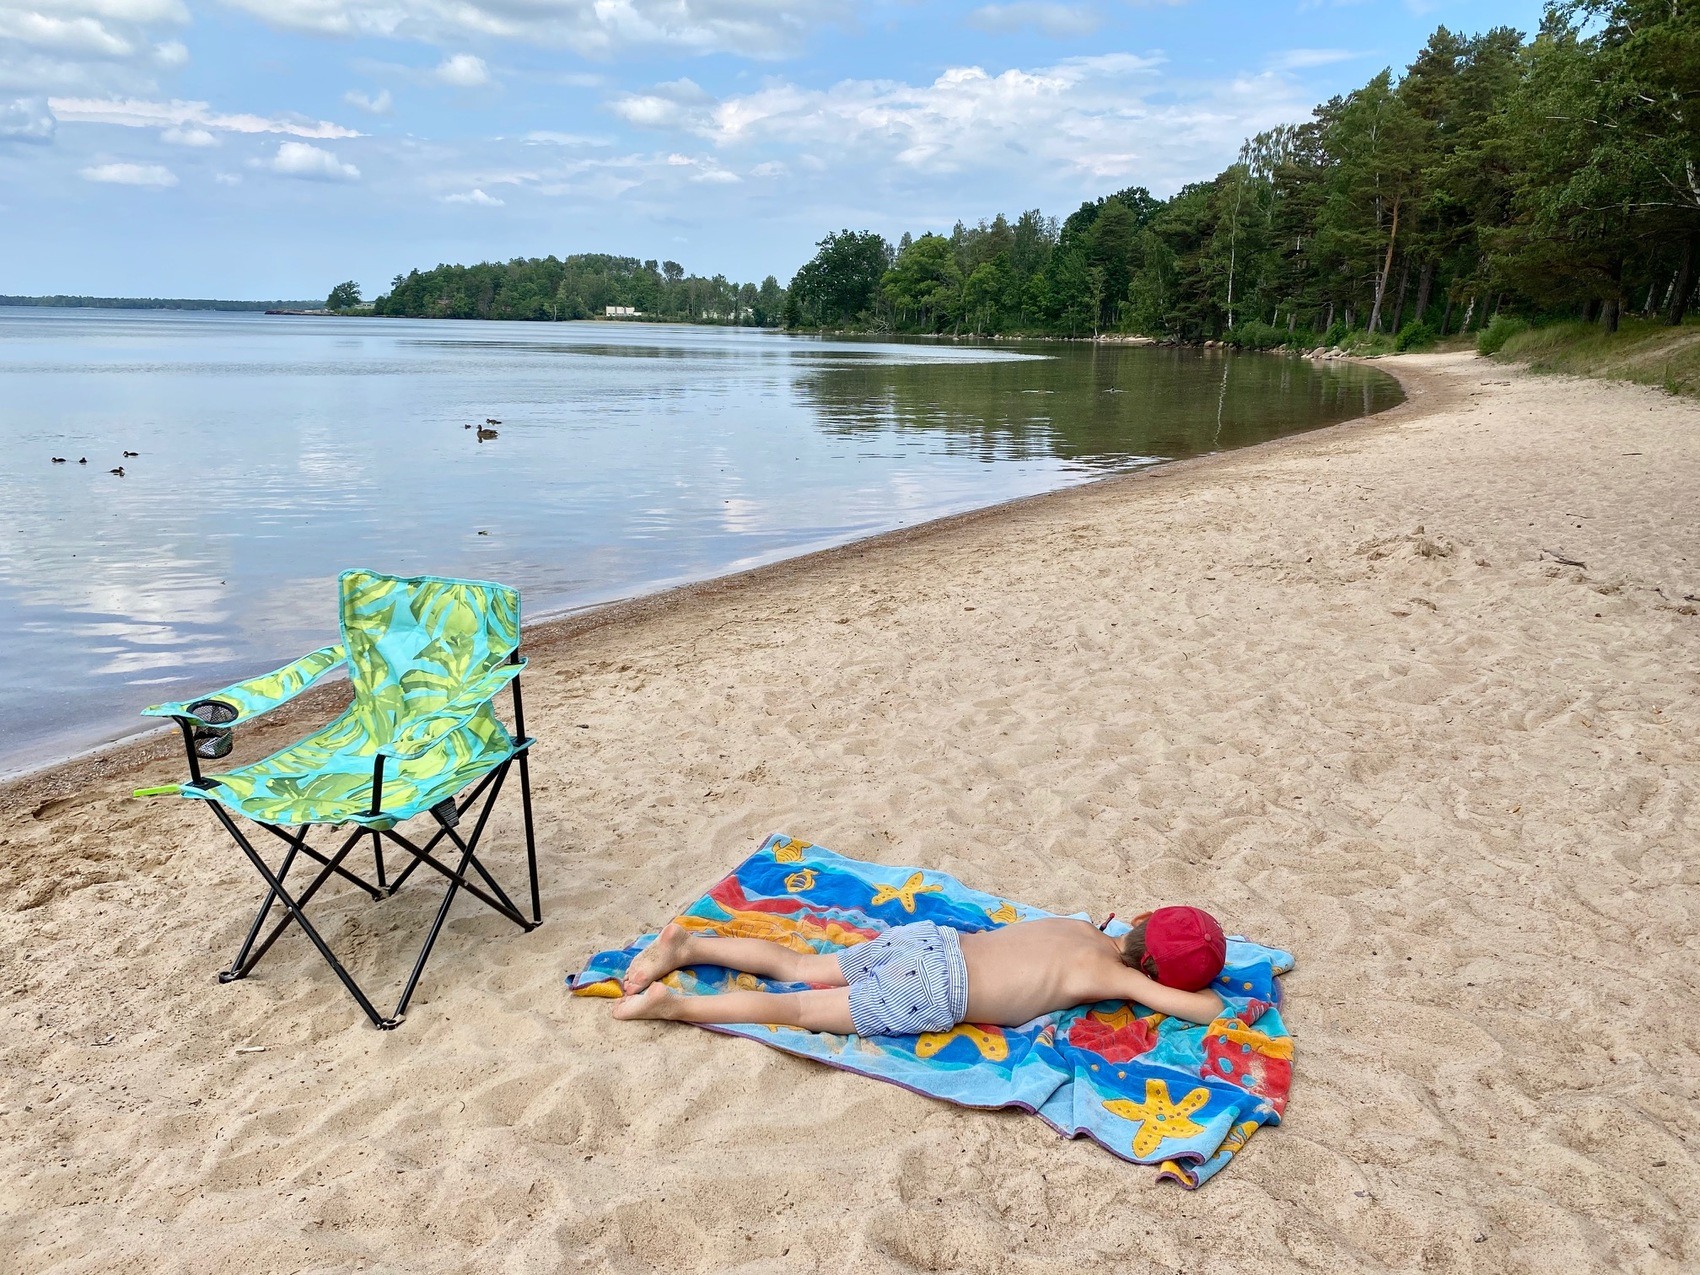 En pojk i röd keps och blårandiga shorts solar på mage på en strand. Bakom honom står en grönfärgad ihopfällbar campingstol.